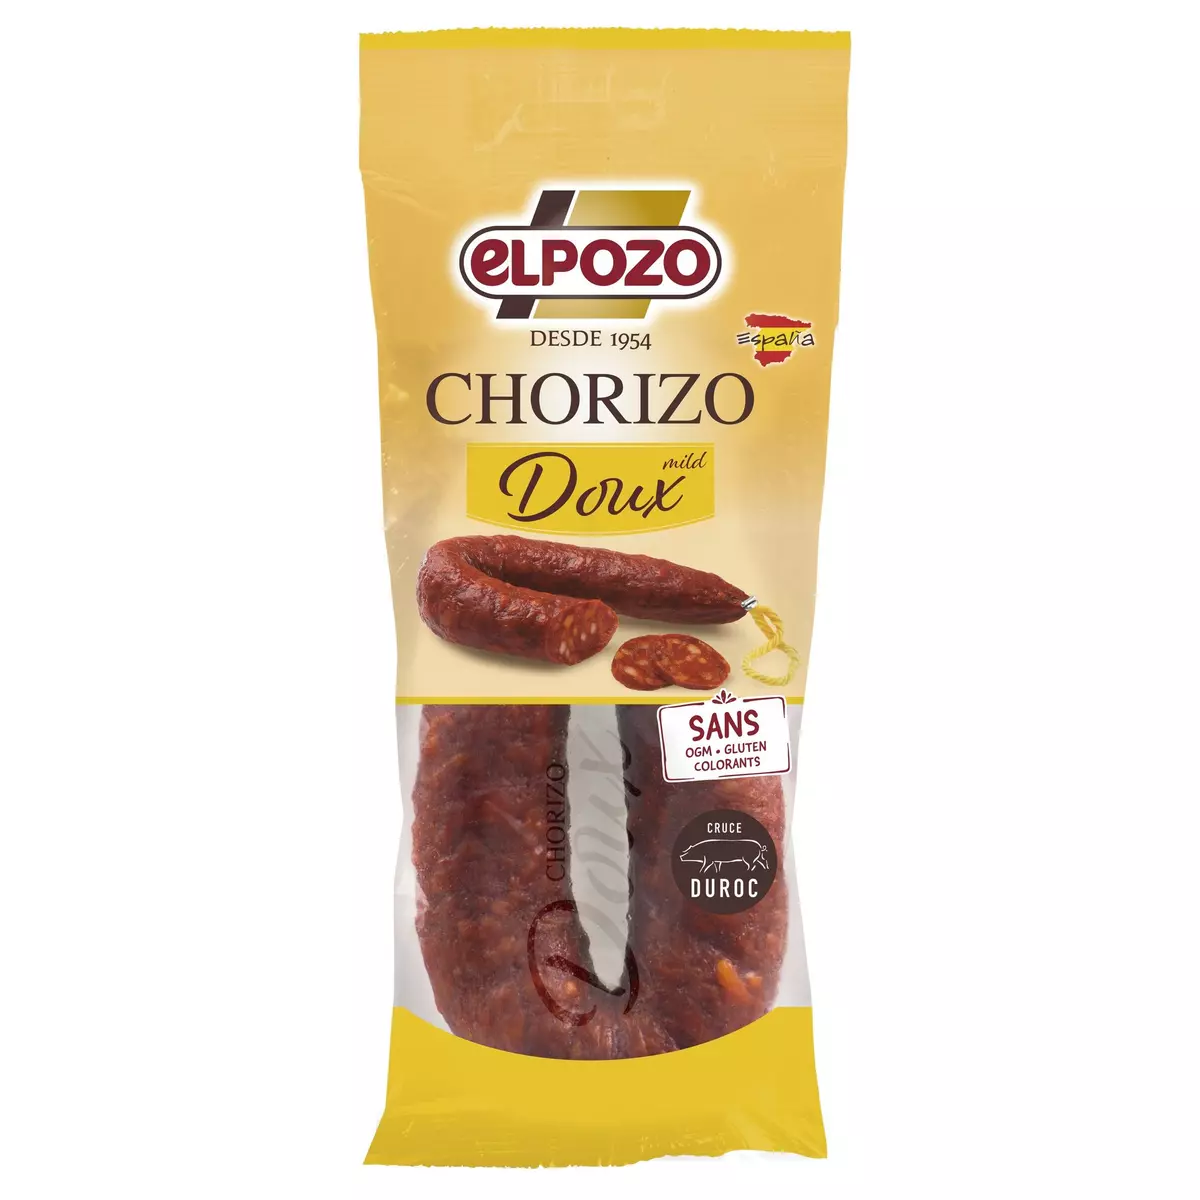 EL POZO Chorizo doux sans gluten et colorants 200g